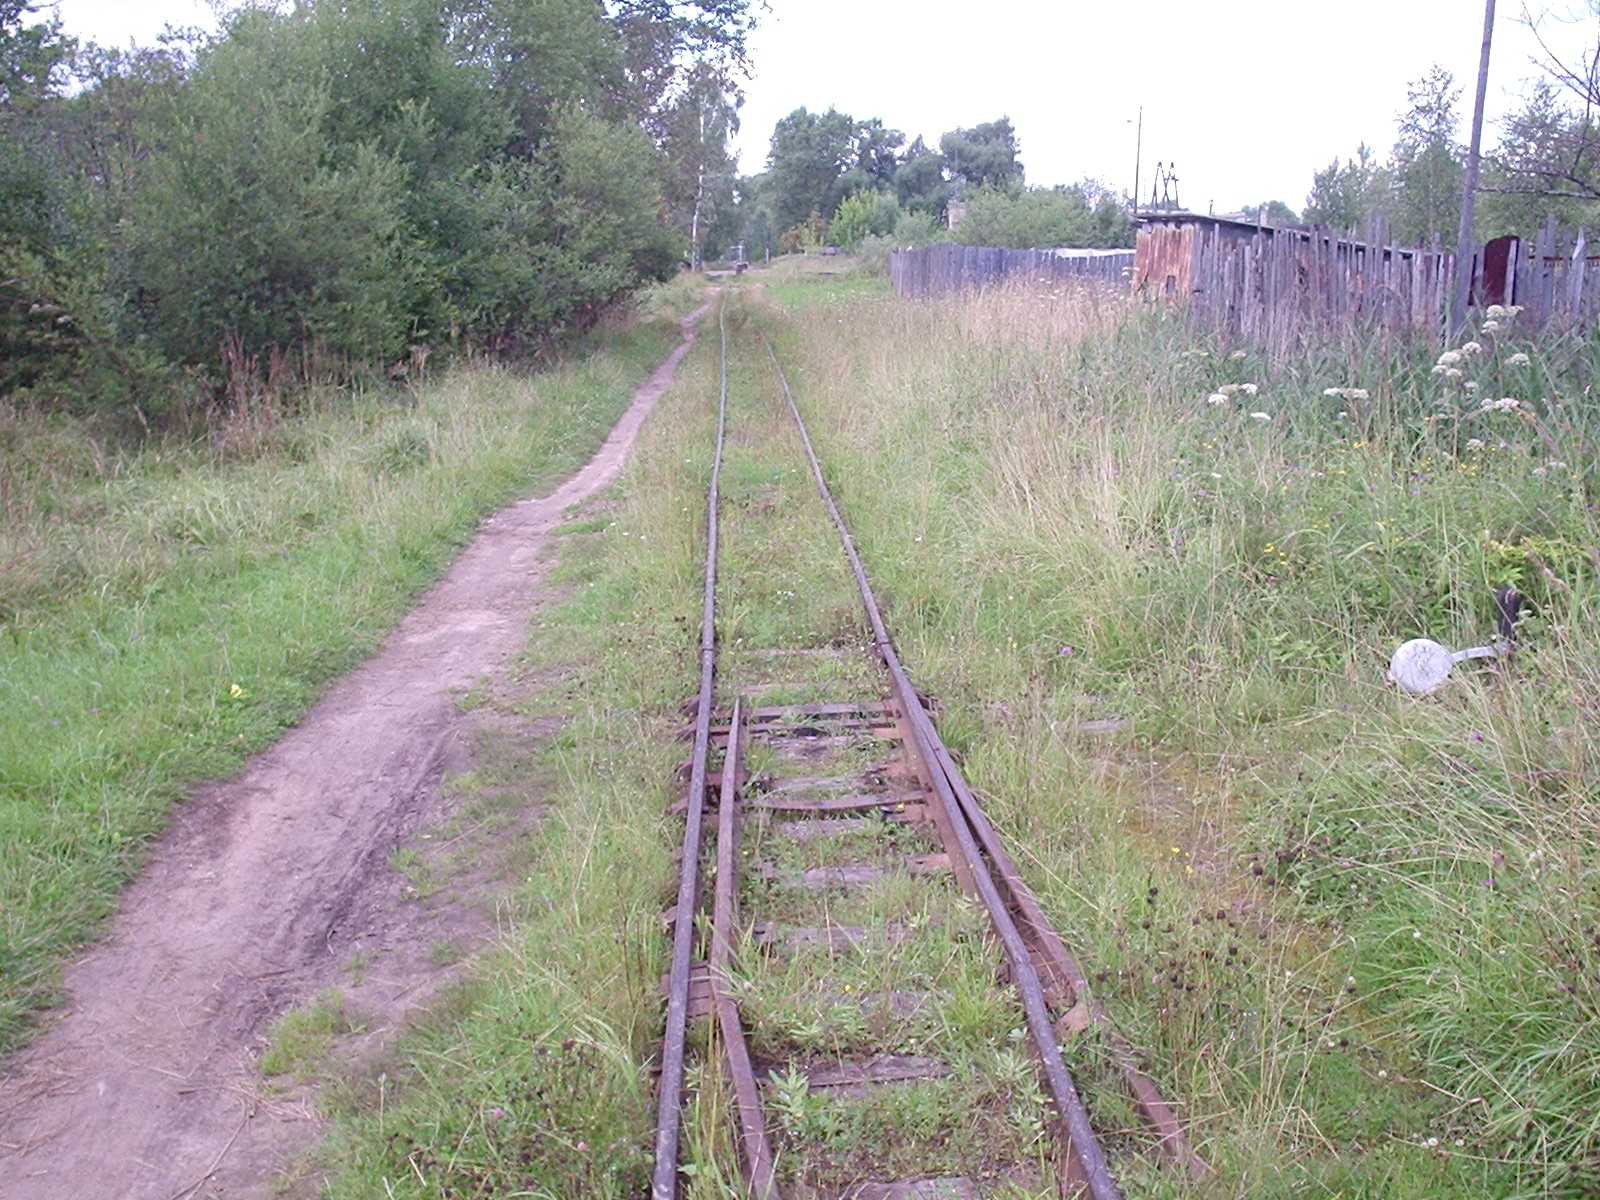 Узкоколейная железная дорога Васильевского предприятия промышленного железнодорожного транспорта  — фотографии, сделанные в 2005 году (часть 17)